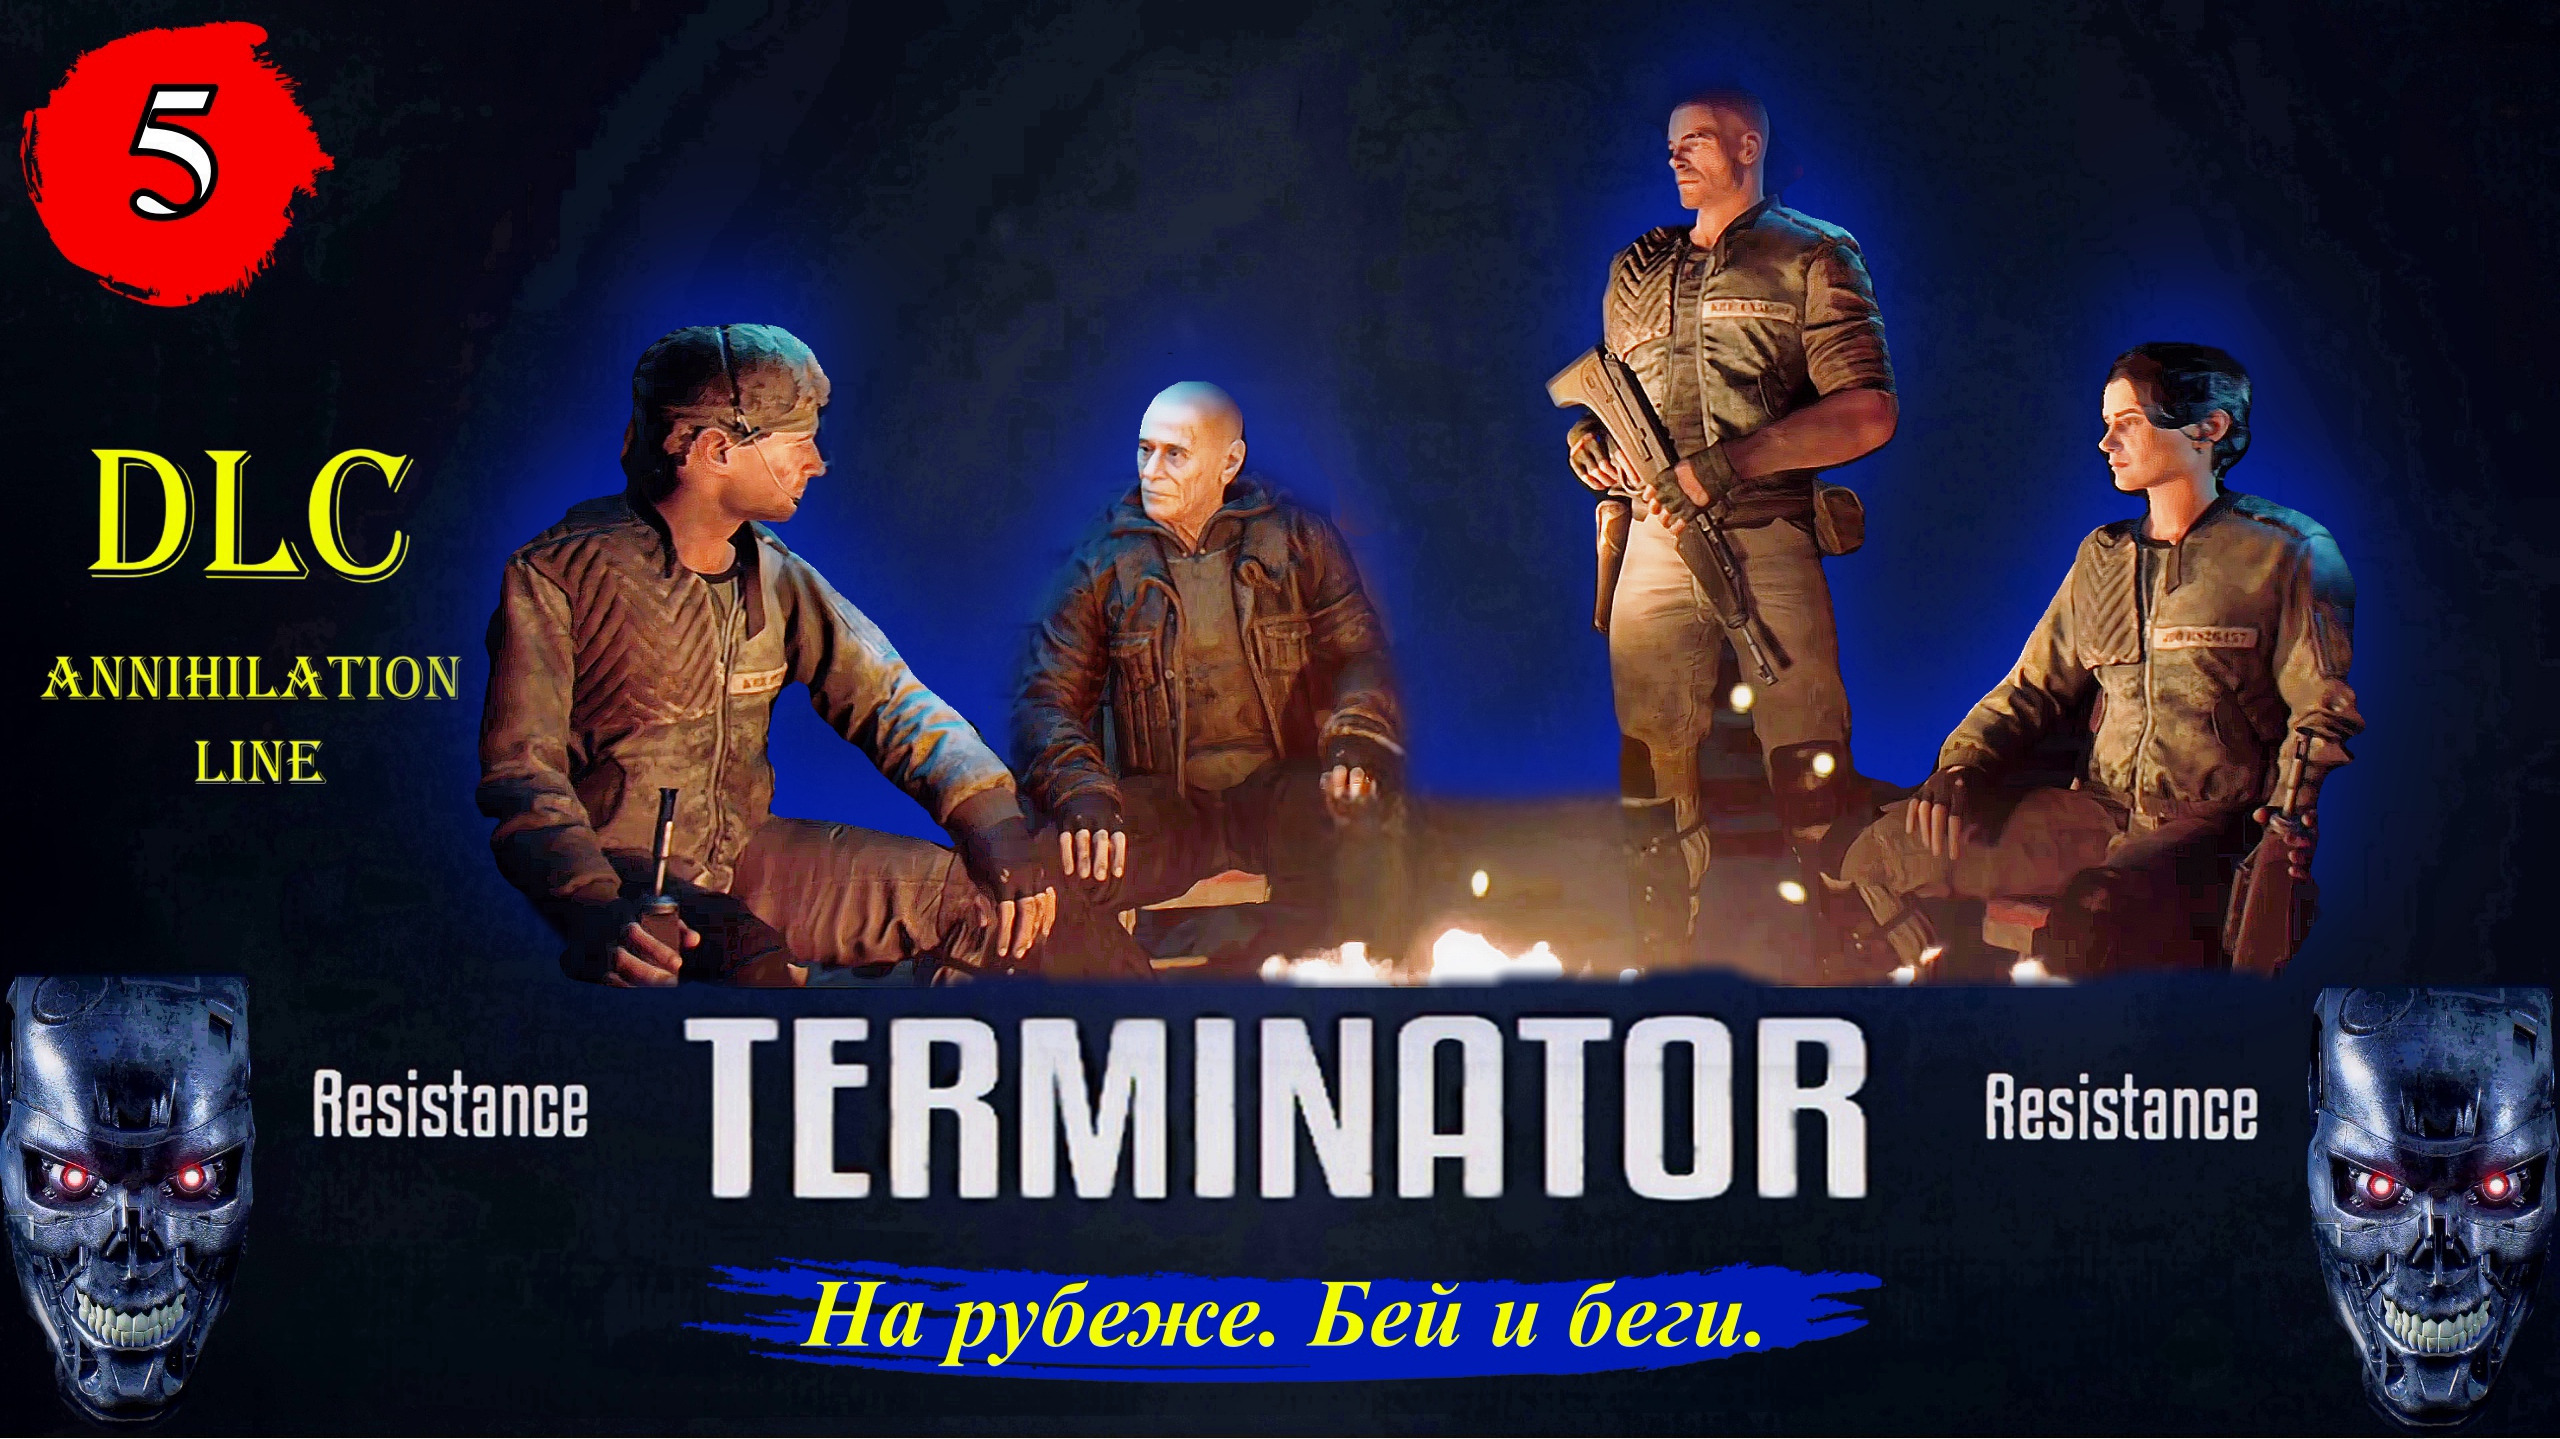 Terminator Resistance Annihilation Line  На рубеже. Бей и беги. - Прохождение. Часть 5